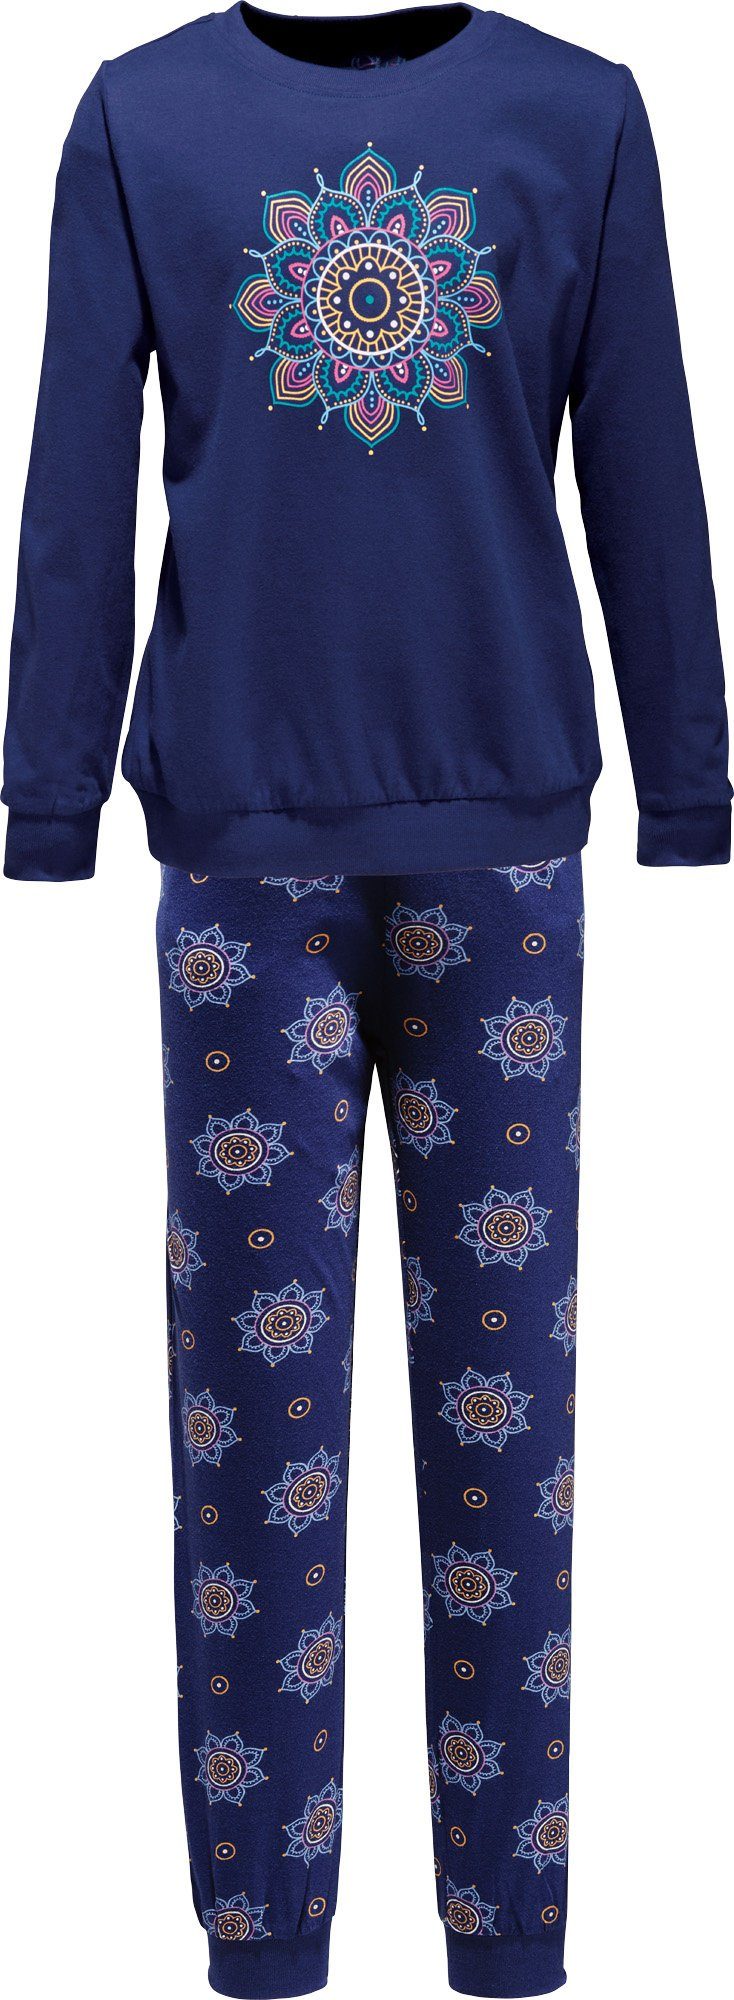 Single-Jersey Kinder-Schlafanzug marine Erwin Müller Pyjama gemustert